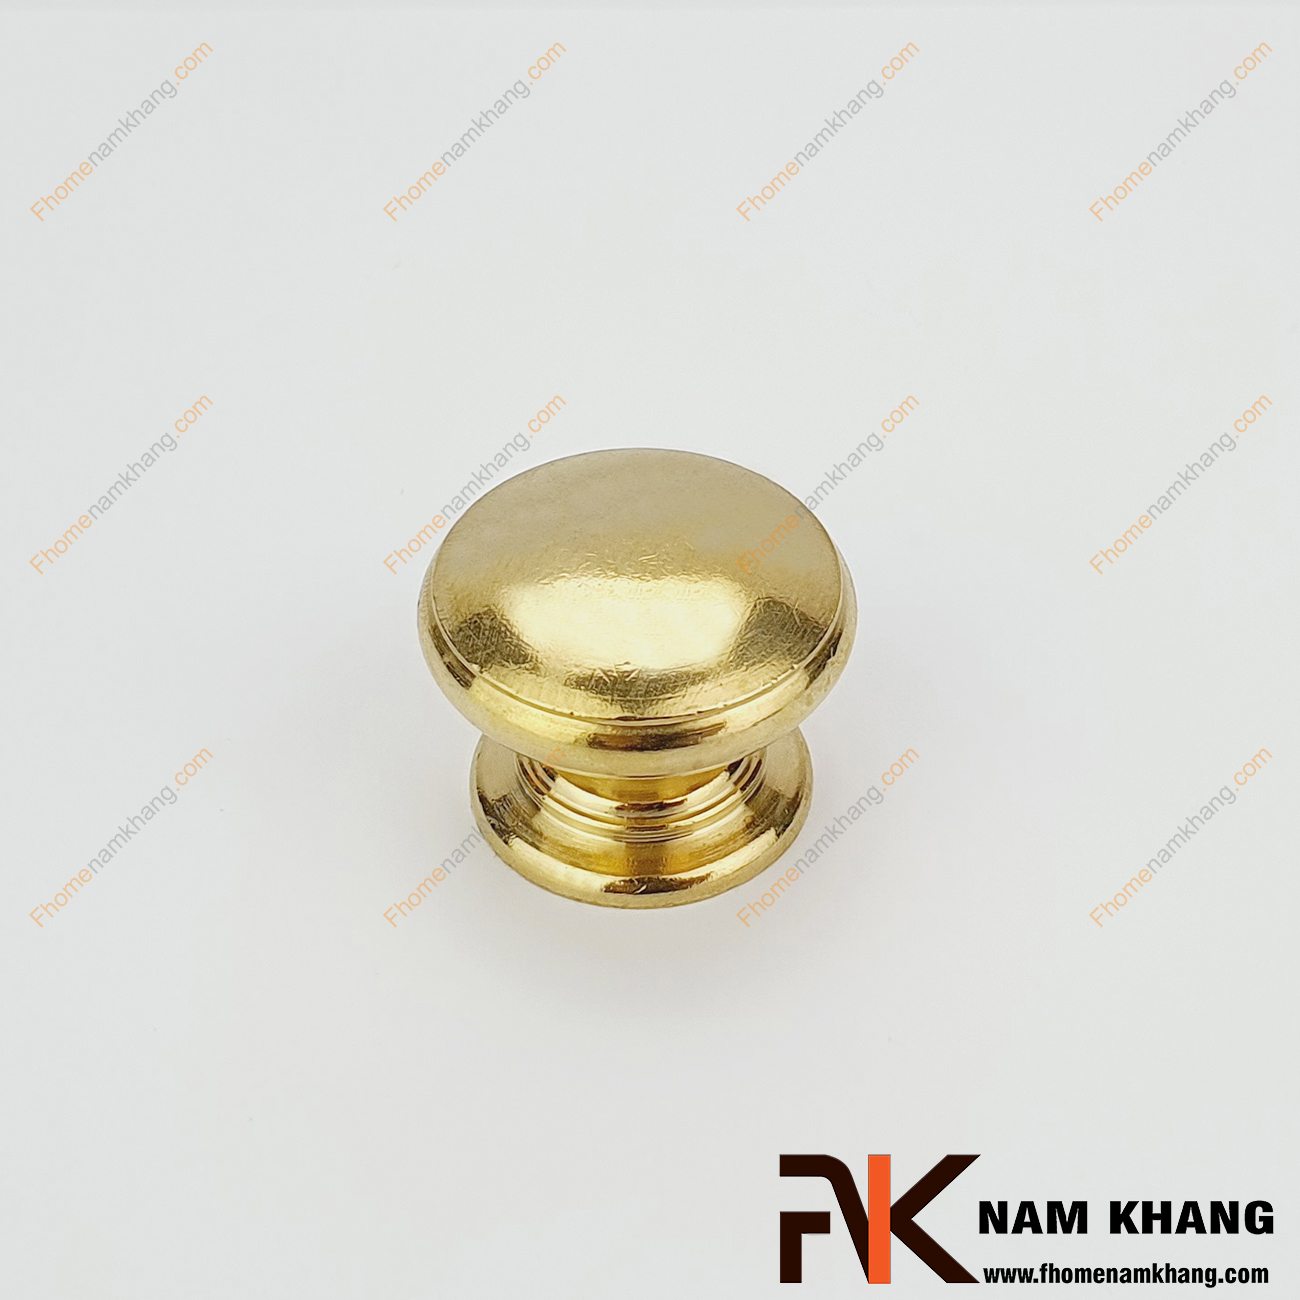 Núm nắm tủ đồng vàng NKD095 là dạng núm tủ tròn nhỏ gọn nhưng chất lượng cao từ vật liệu đồng cao cấp.